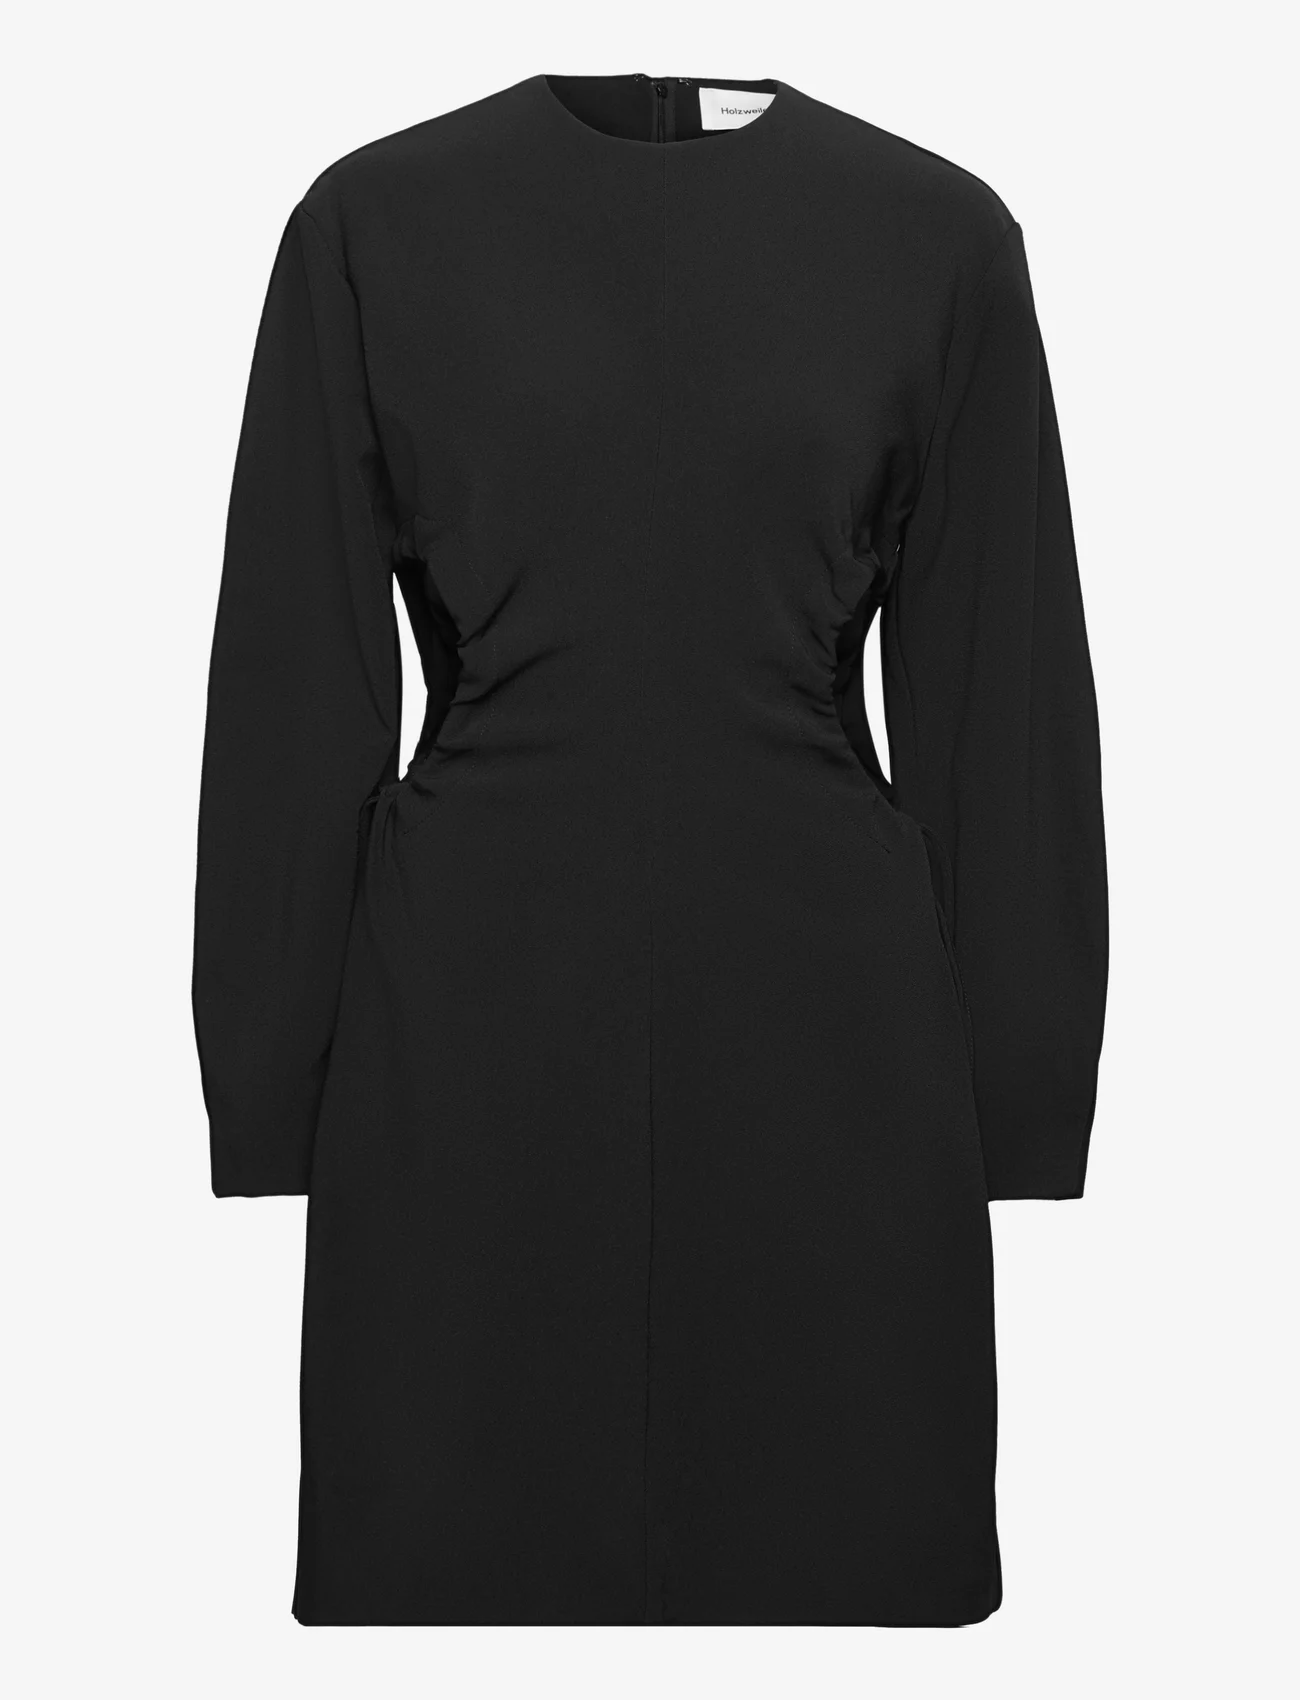 HOLZWEILER - Vision Cut Dress - festtøj til outletpriser - black - 0